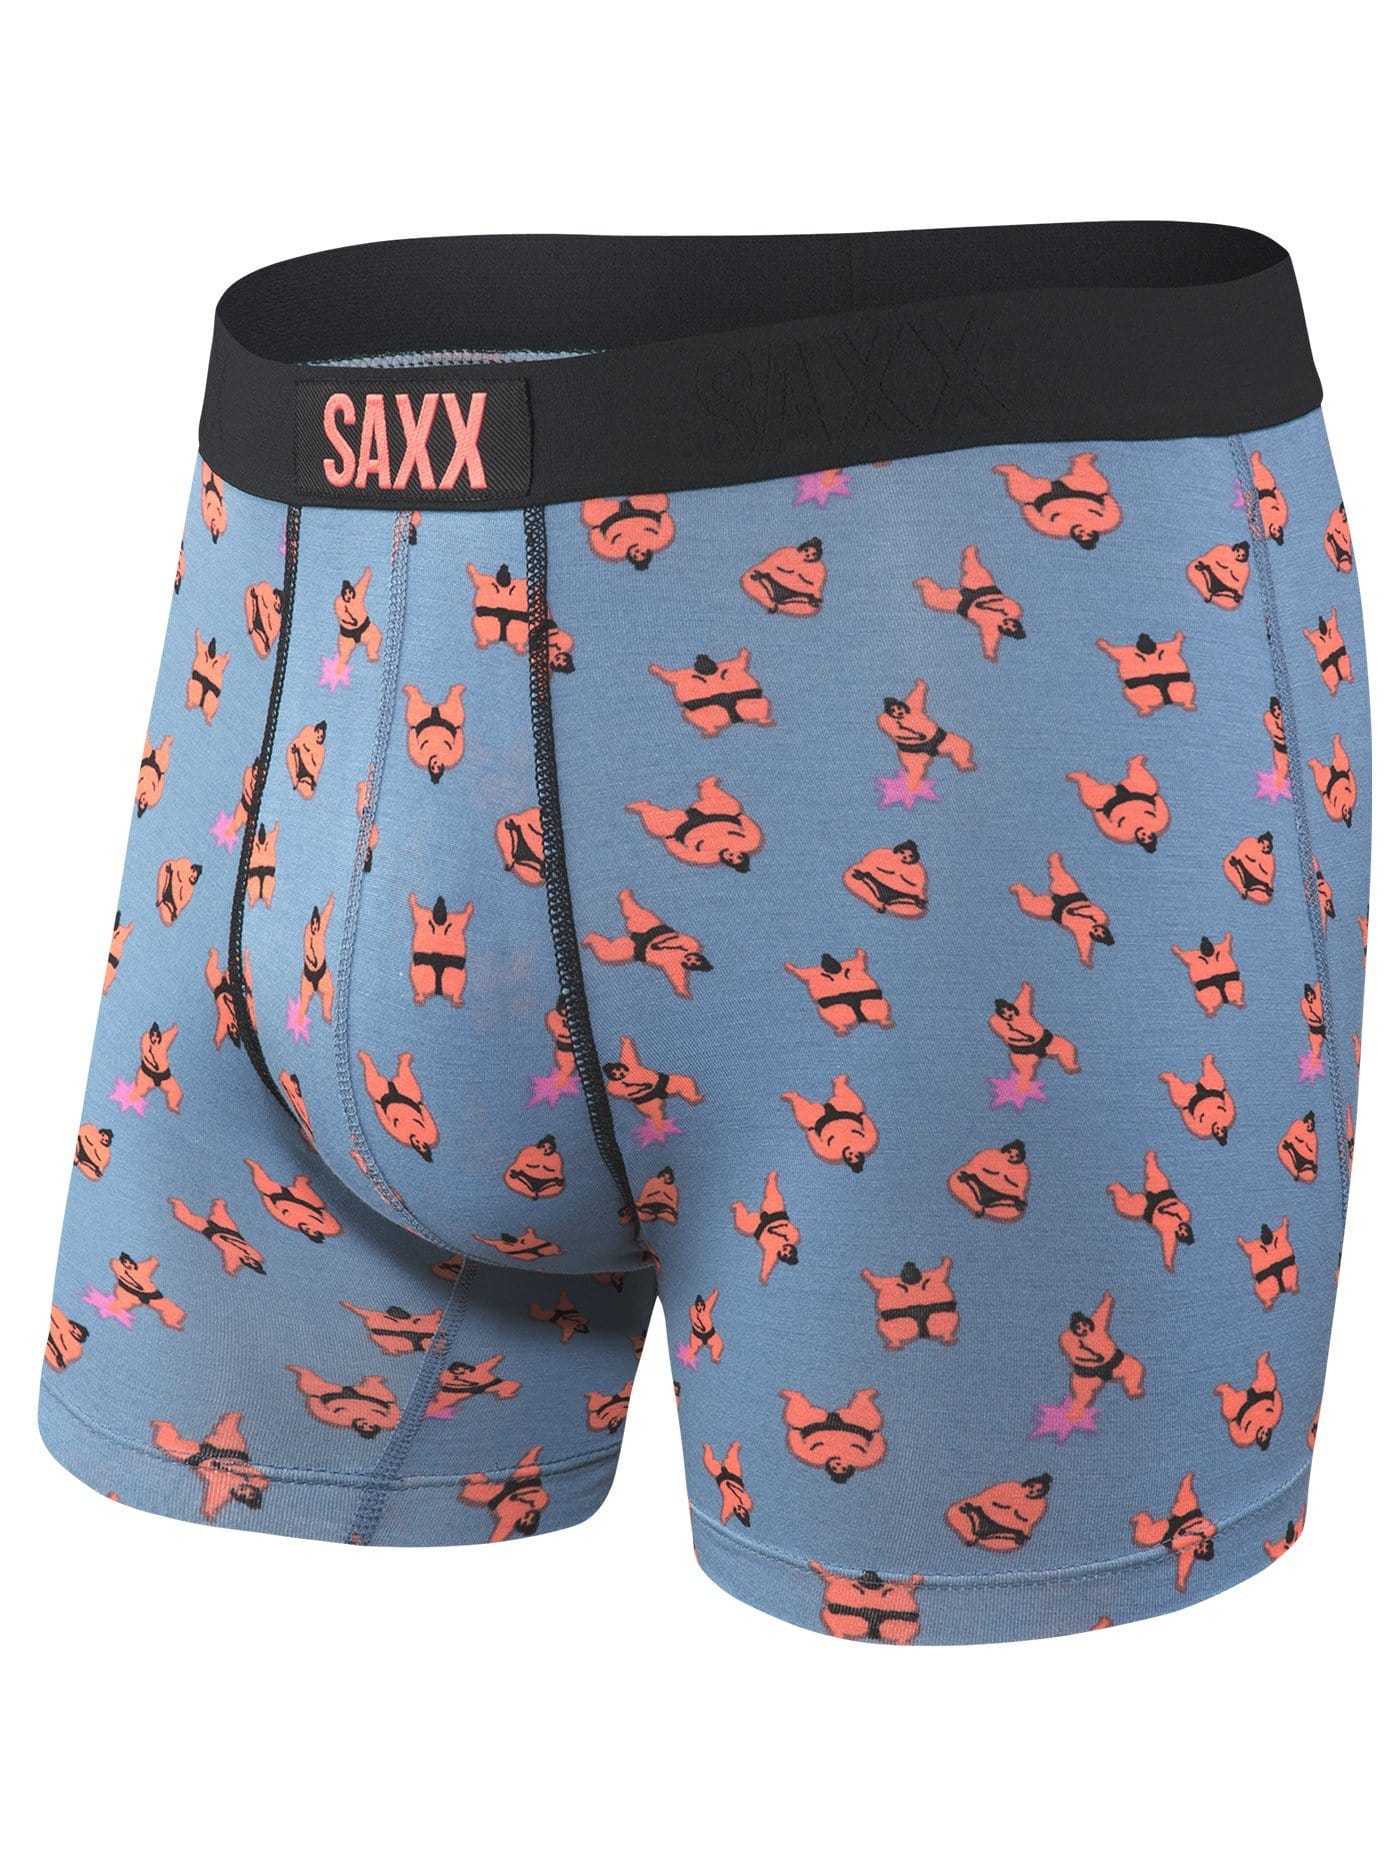 About Us – SAXX Underwear